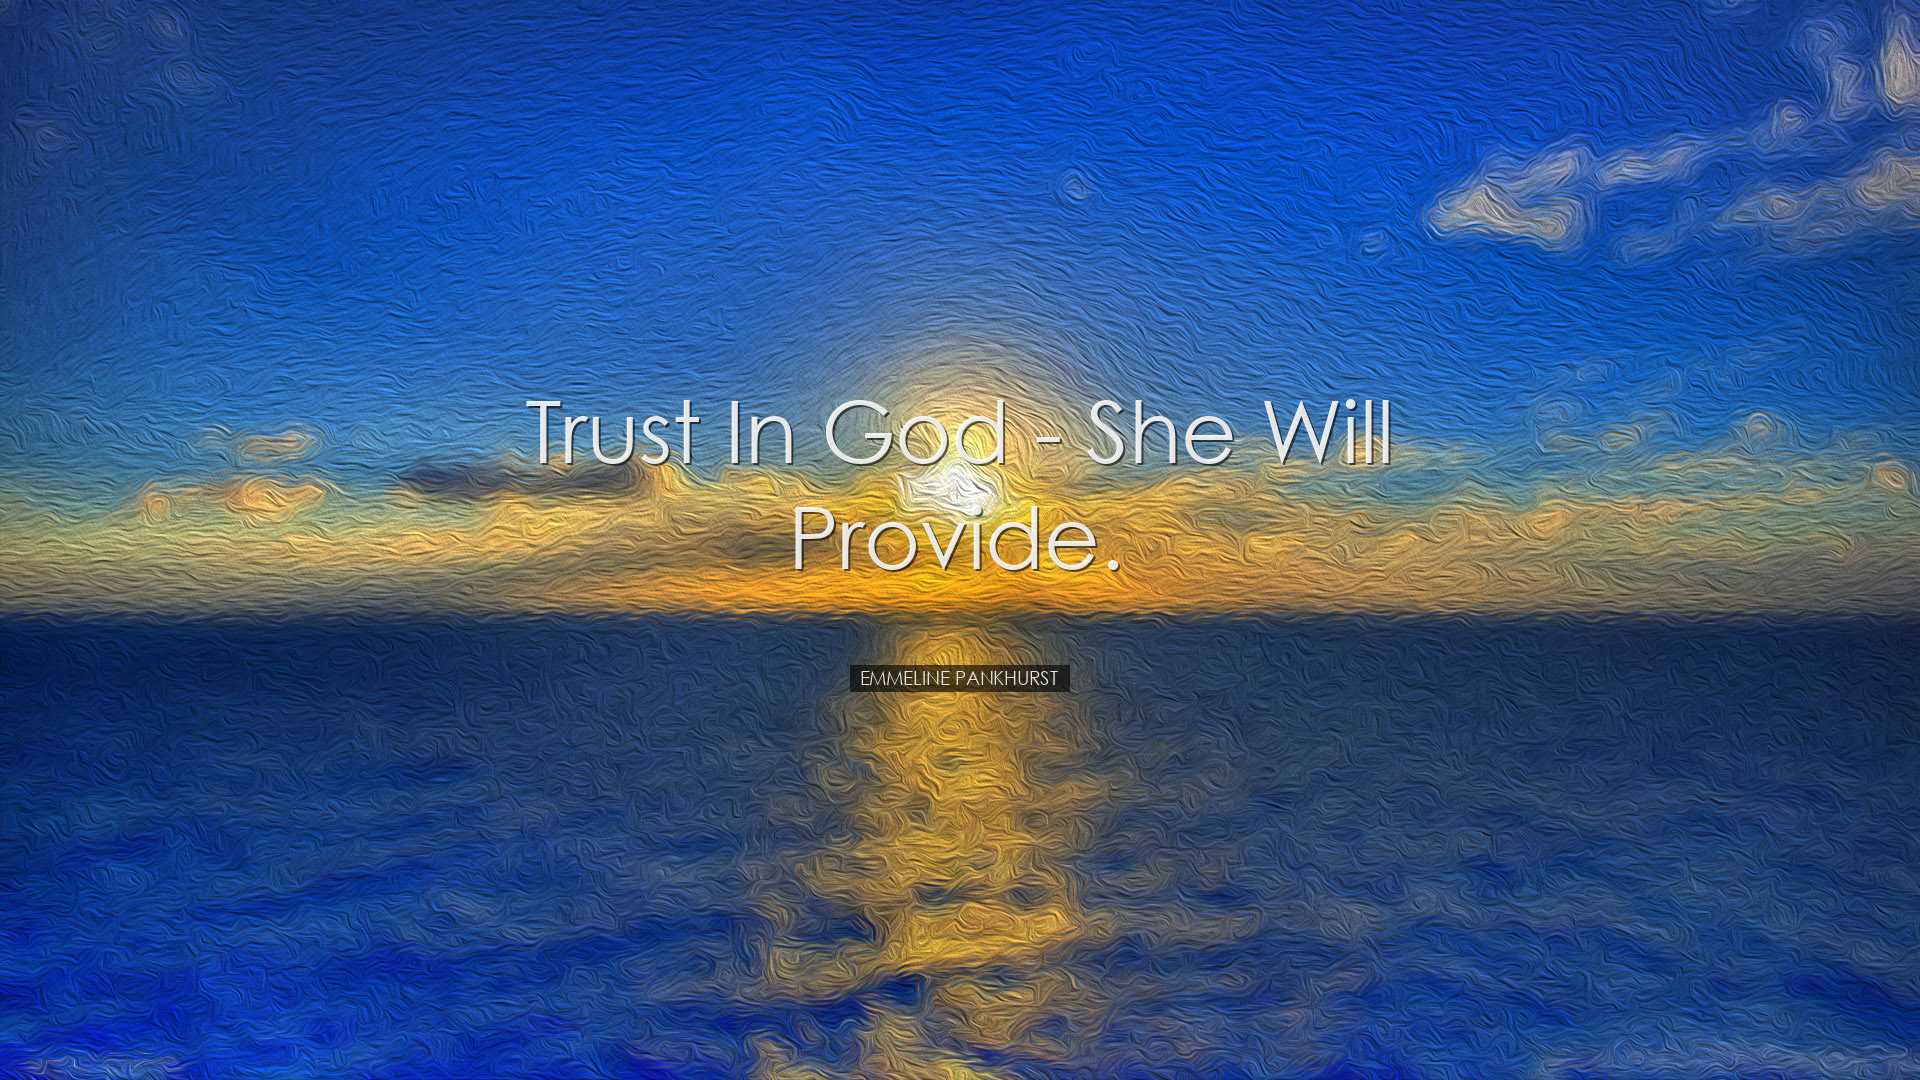 Trust in God - she will provide. - Emmeline Pankhurst